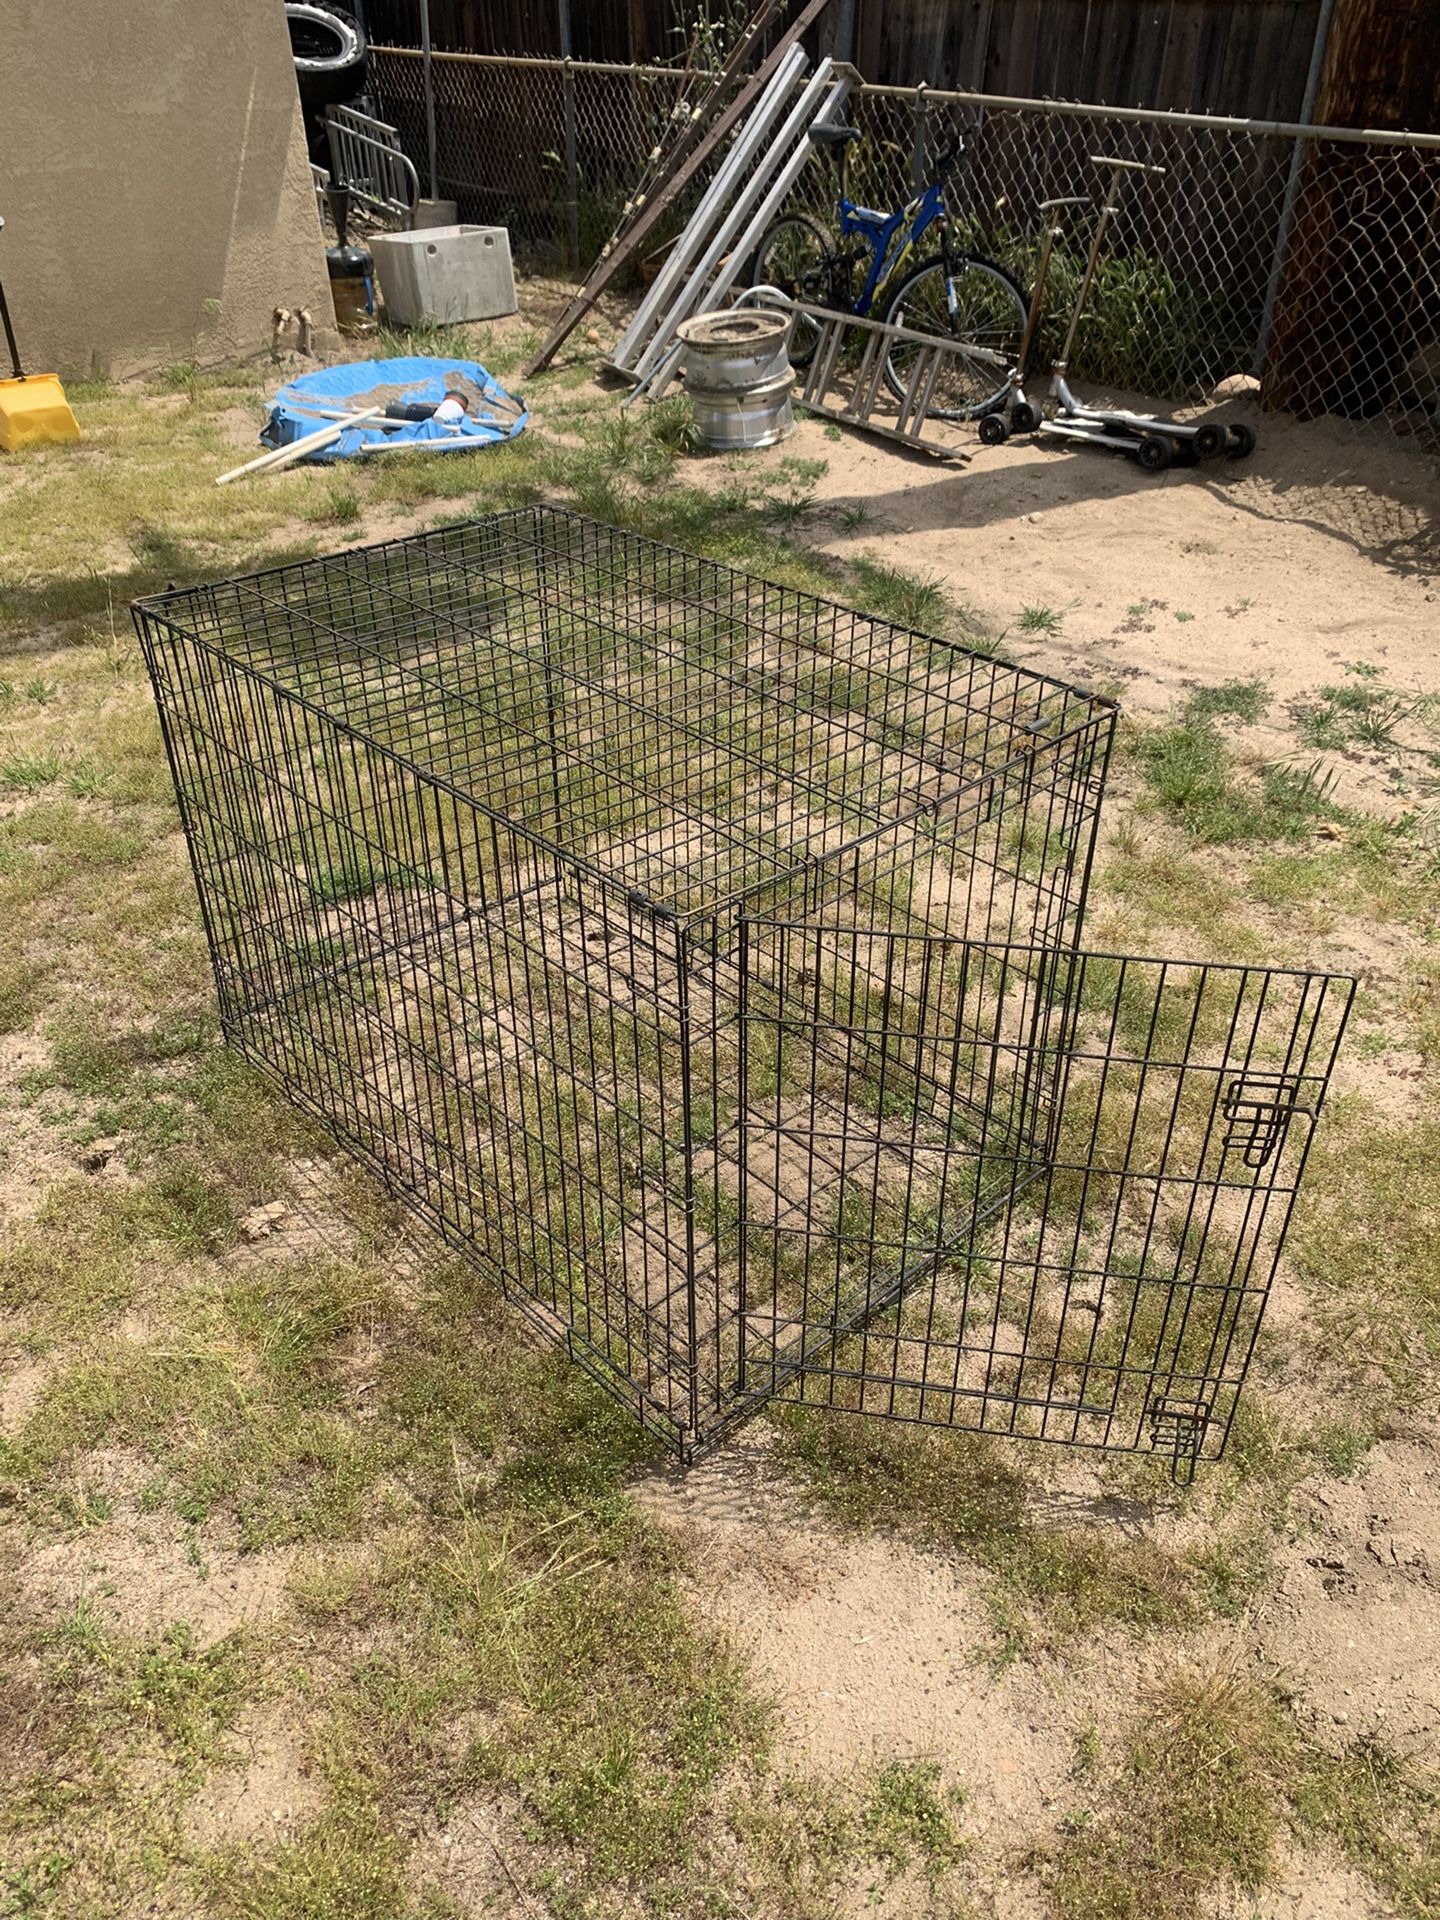 Large- Dog Cage